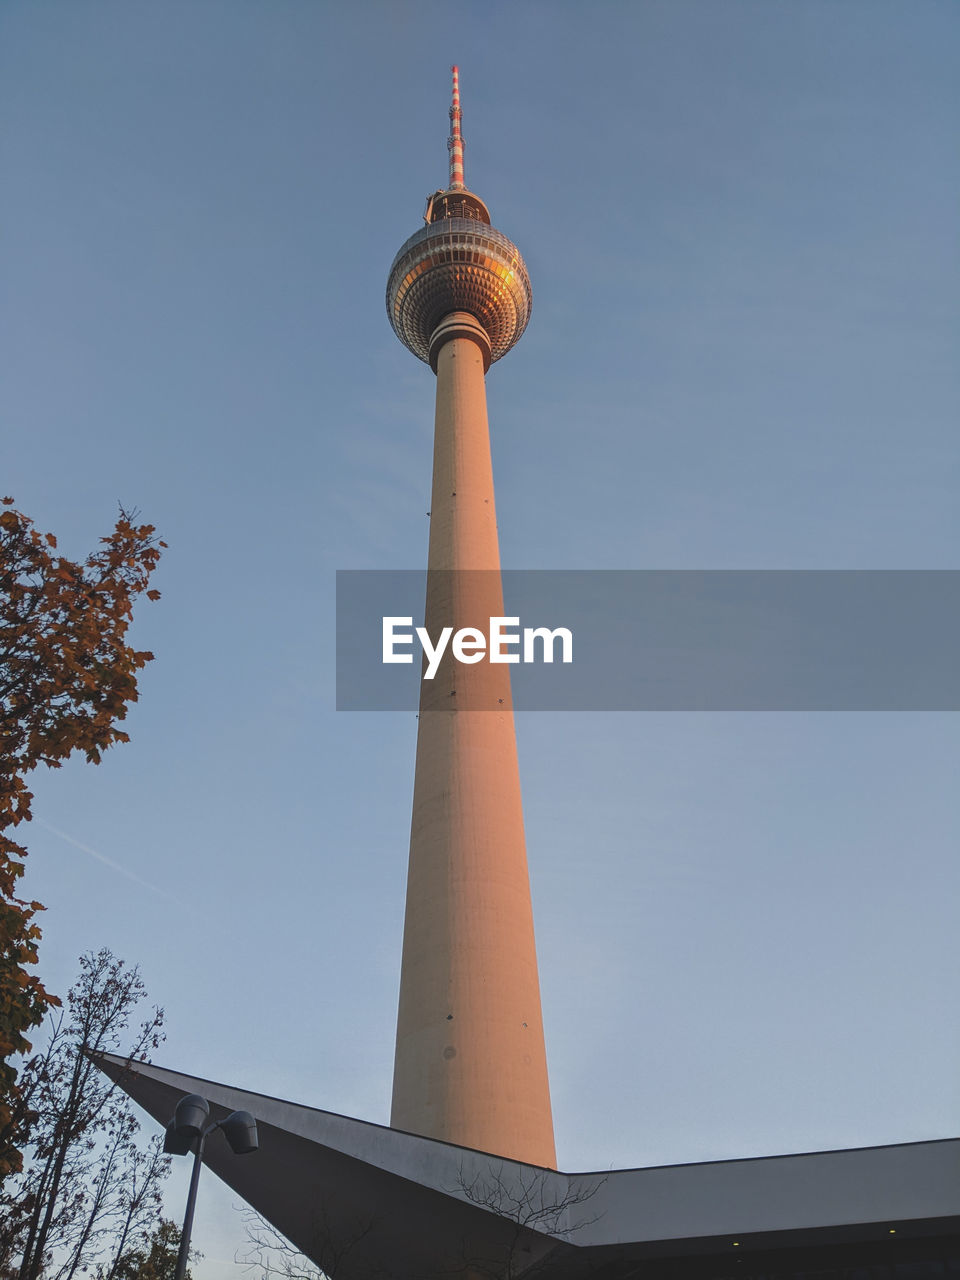 Berliner fernsehturm, tv tower, berlin, germany 